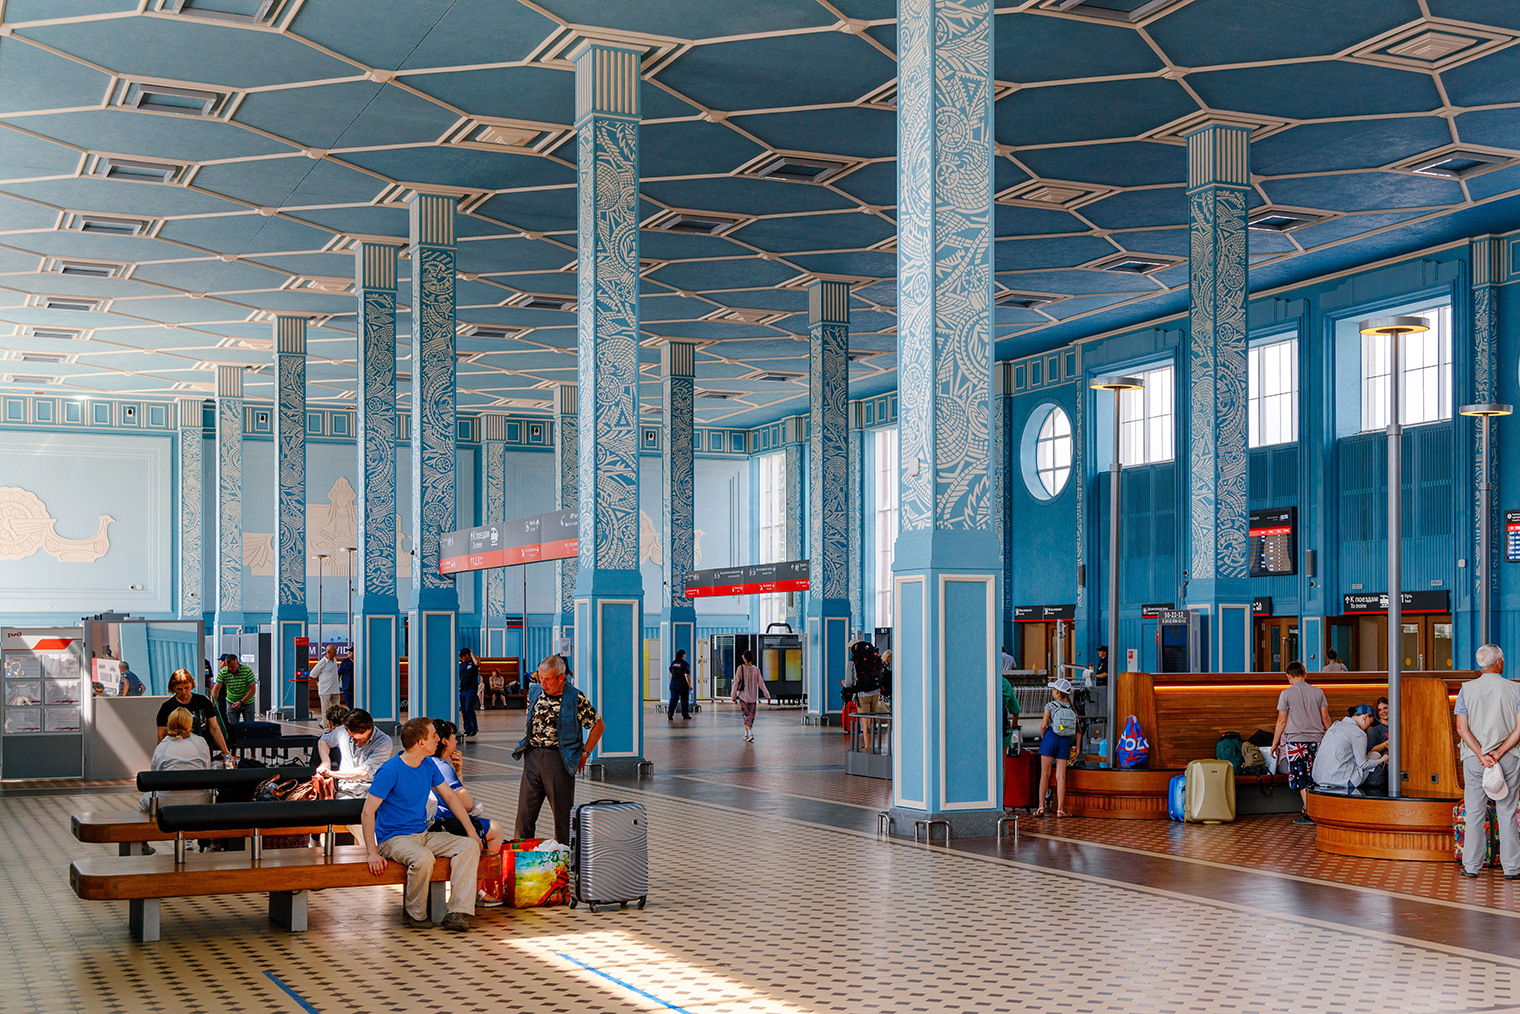 Интерьер вокзала выглядит стильно. Фотография: Andrey_Vasiliskov / Shutterstock / FOTODOM